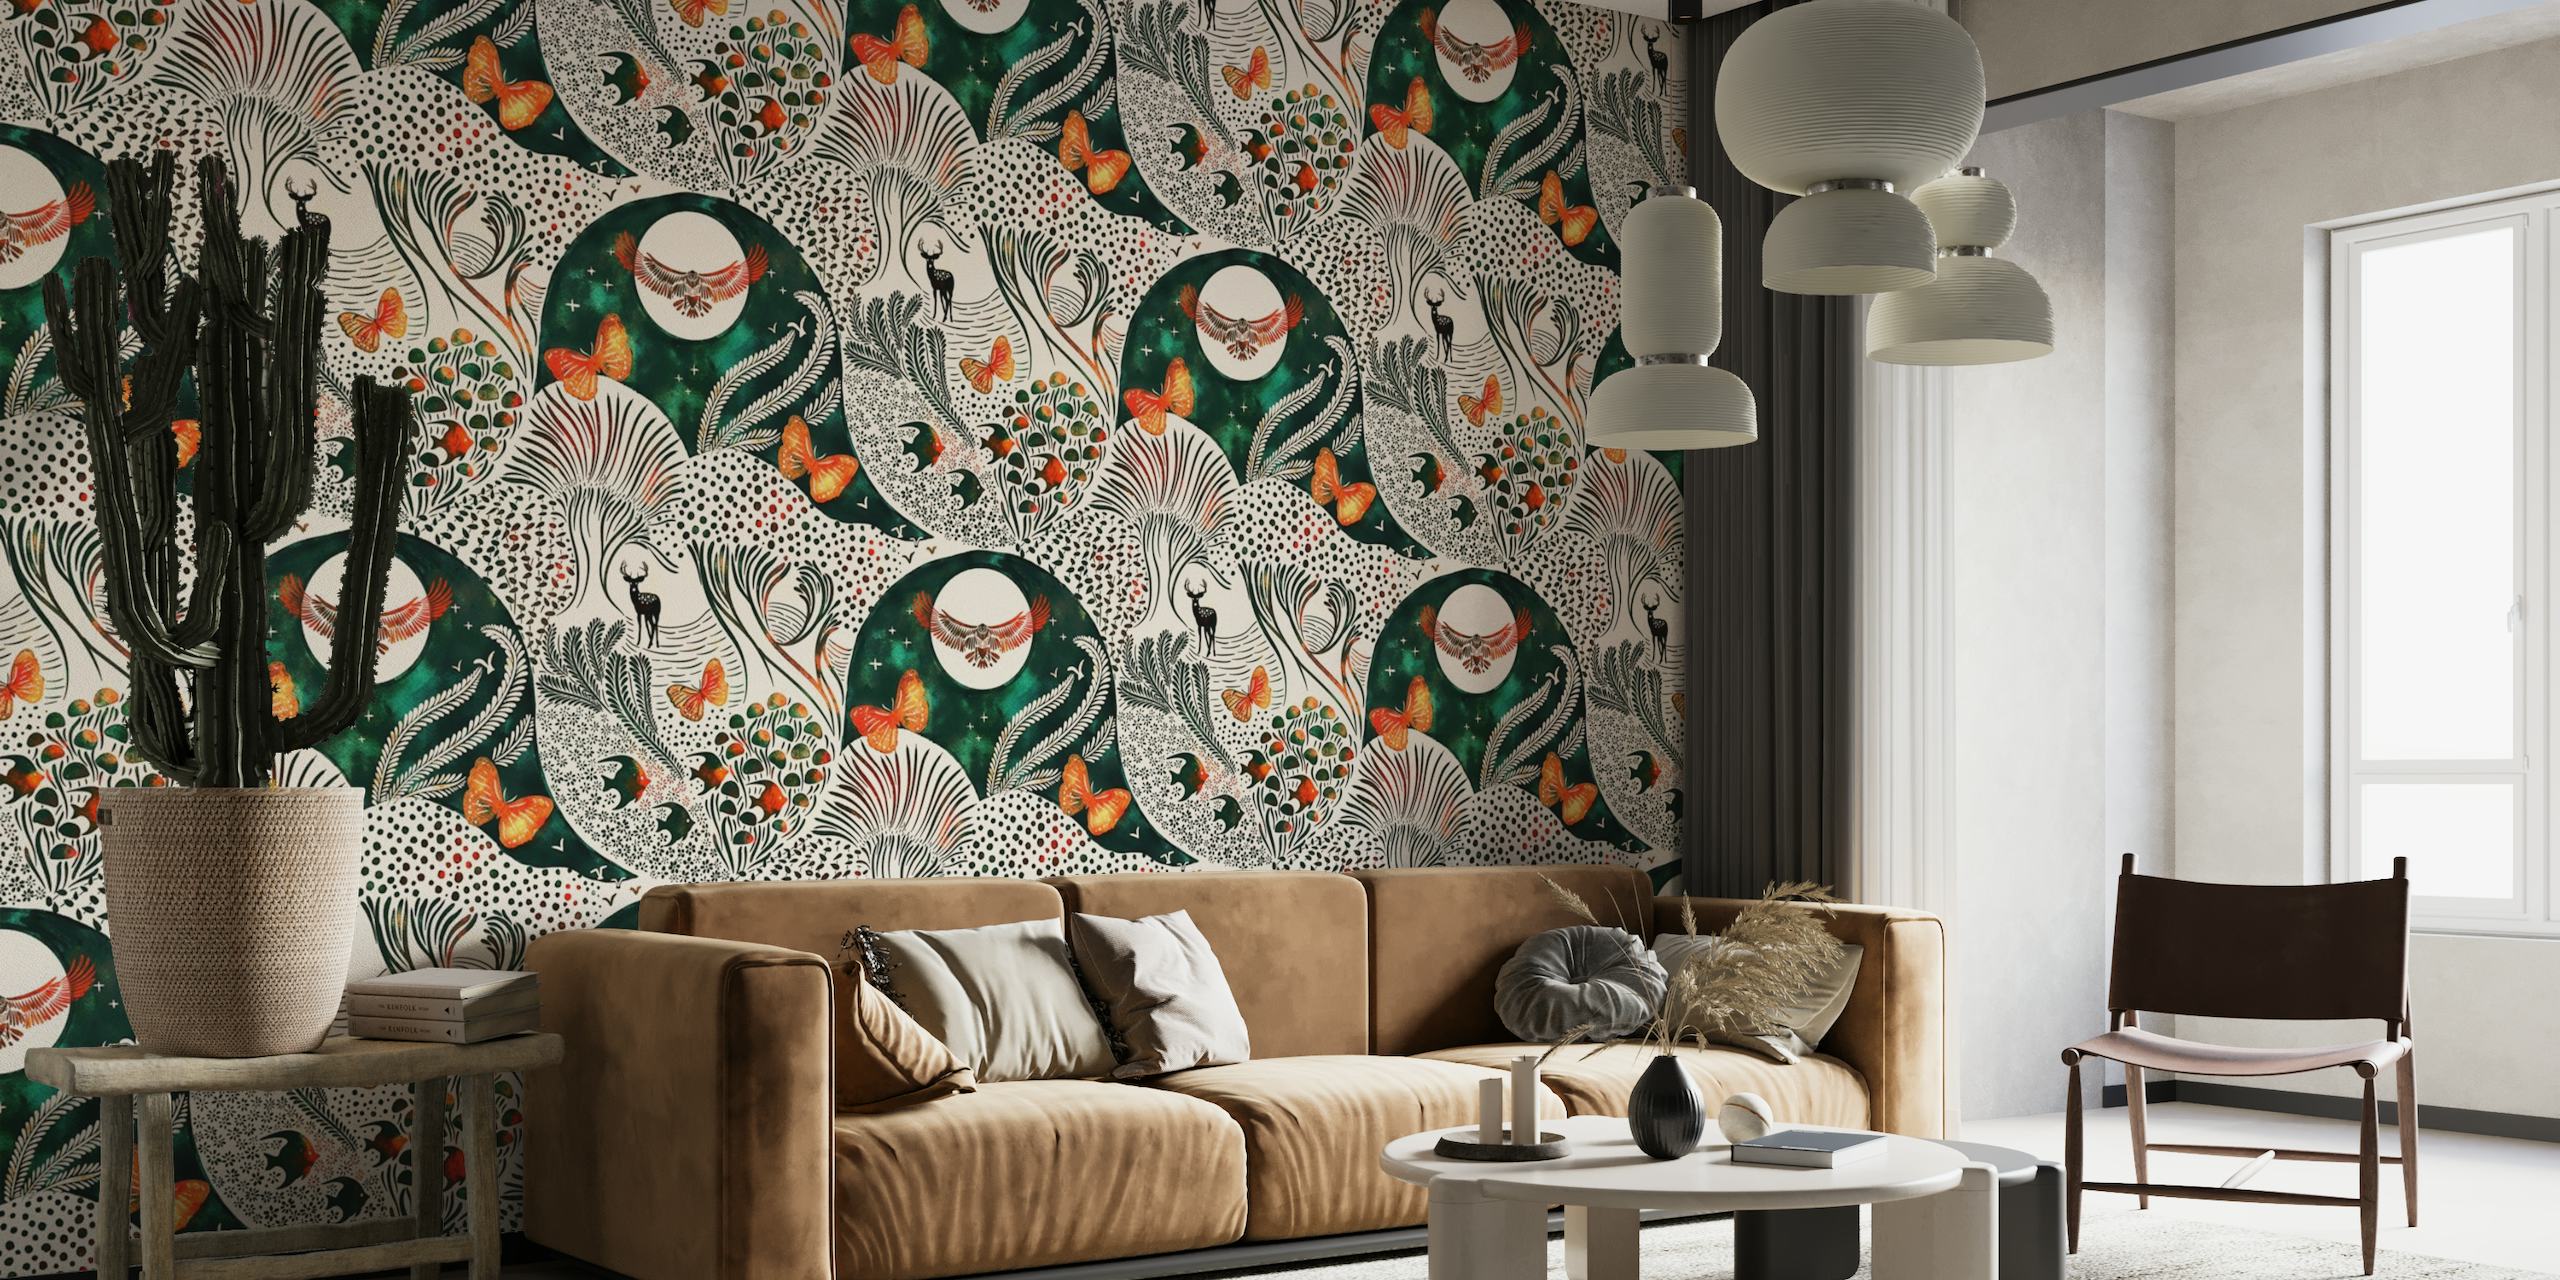 Von der Fantasie inspiriertes Wandbild mit stilisierten Bäumen und Tieren in einem faszinierenden Muster